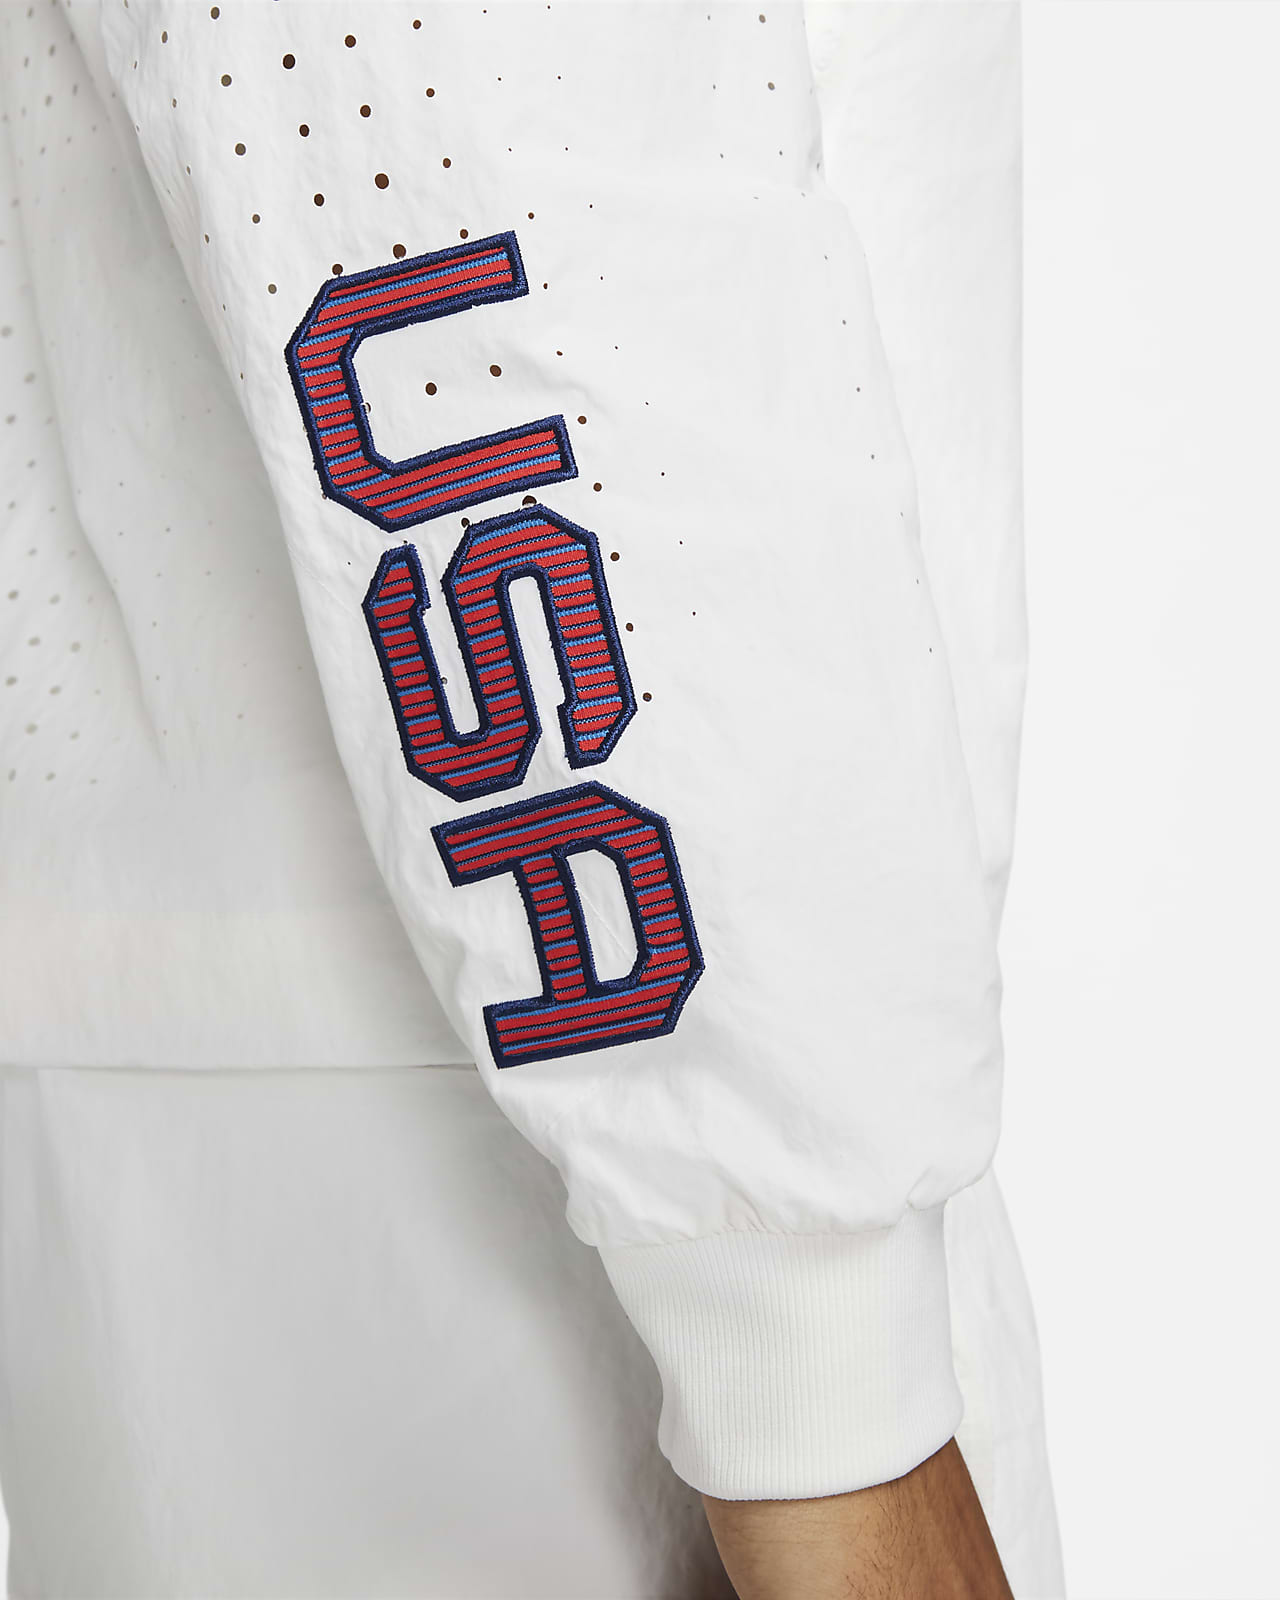 Nike Team USA Windrunner Men's Medal Stand Jacket